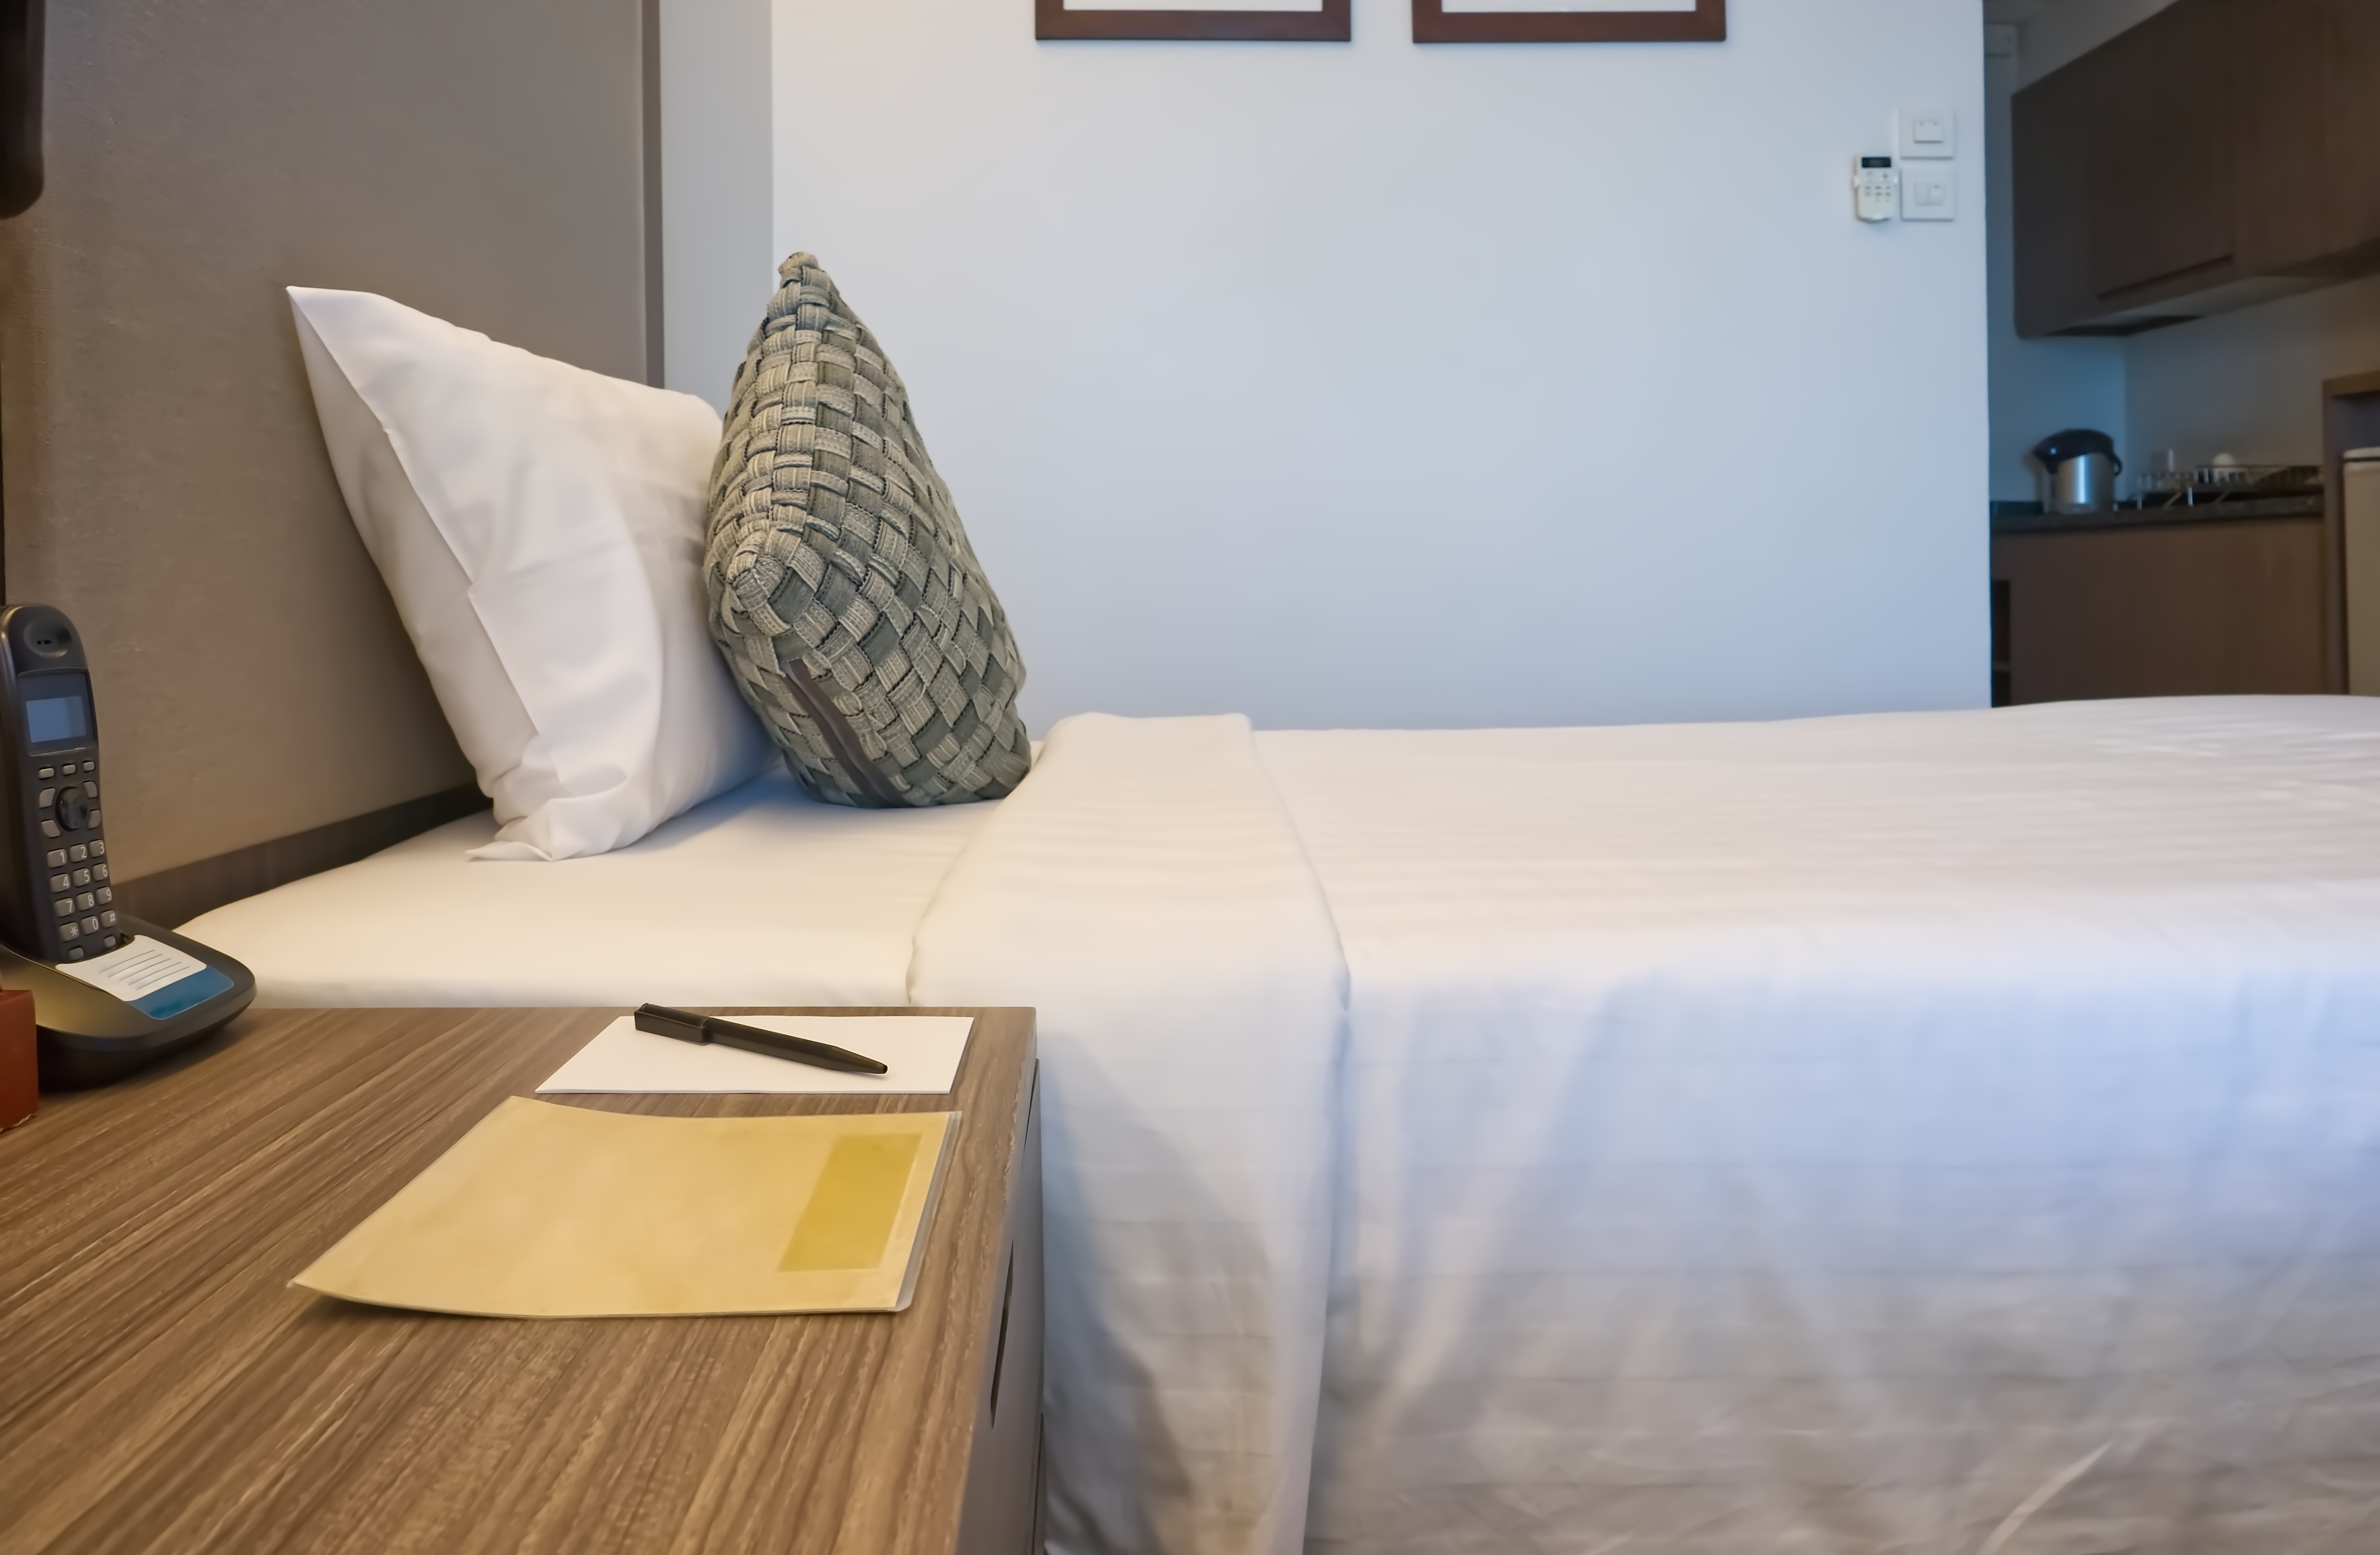 Un bloc de notas y un bolígrafo junto a una cama | Foto: Shutterstock